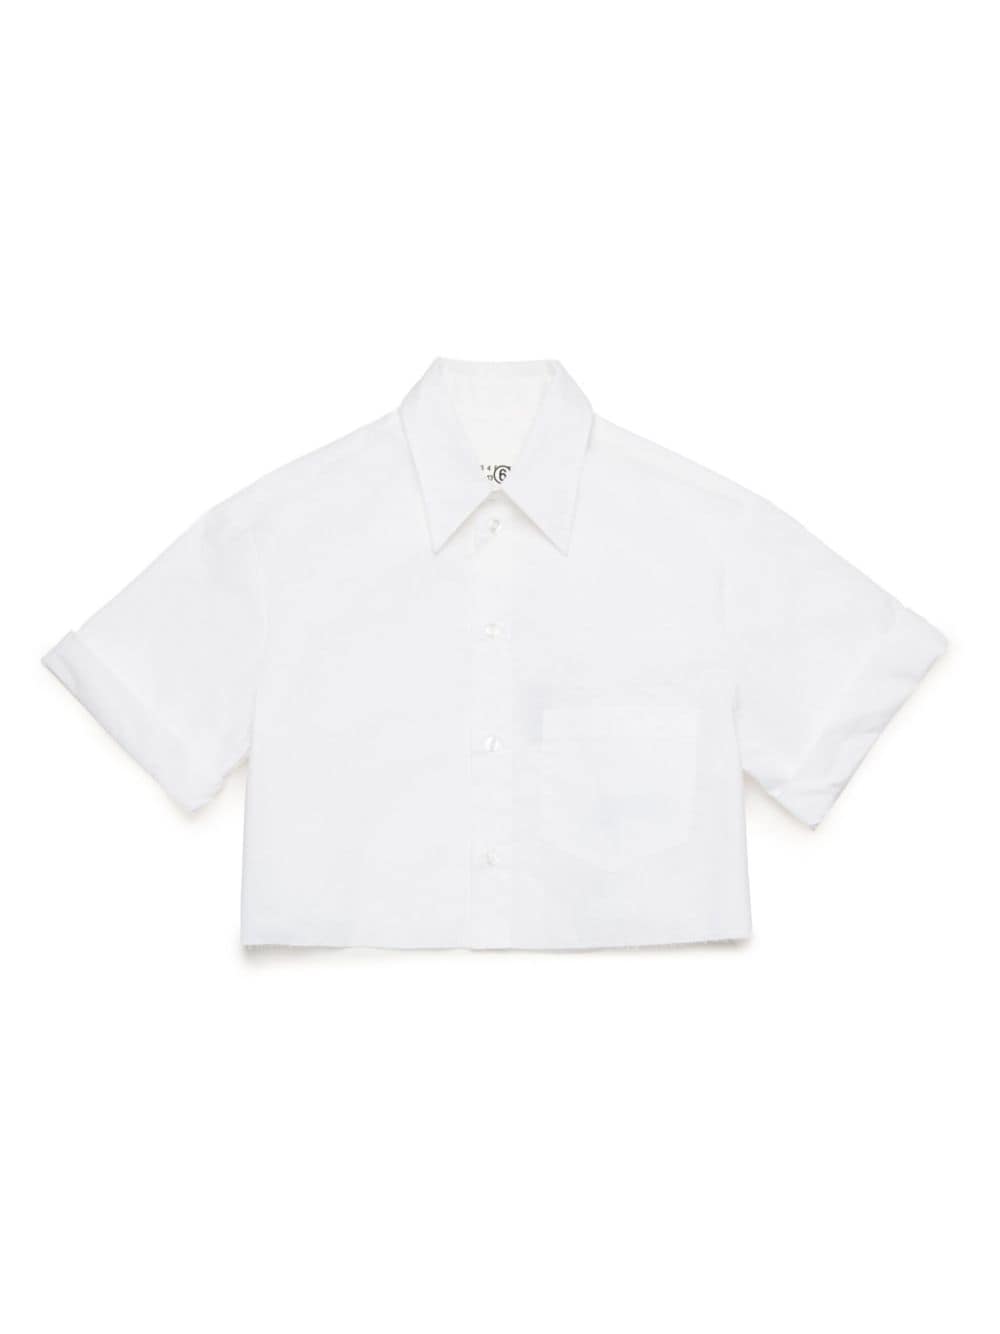 Camicia bianca per bambina con logo